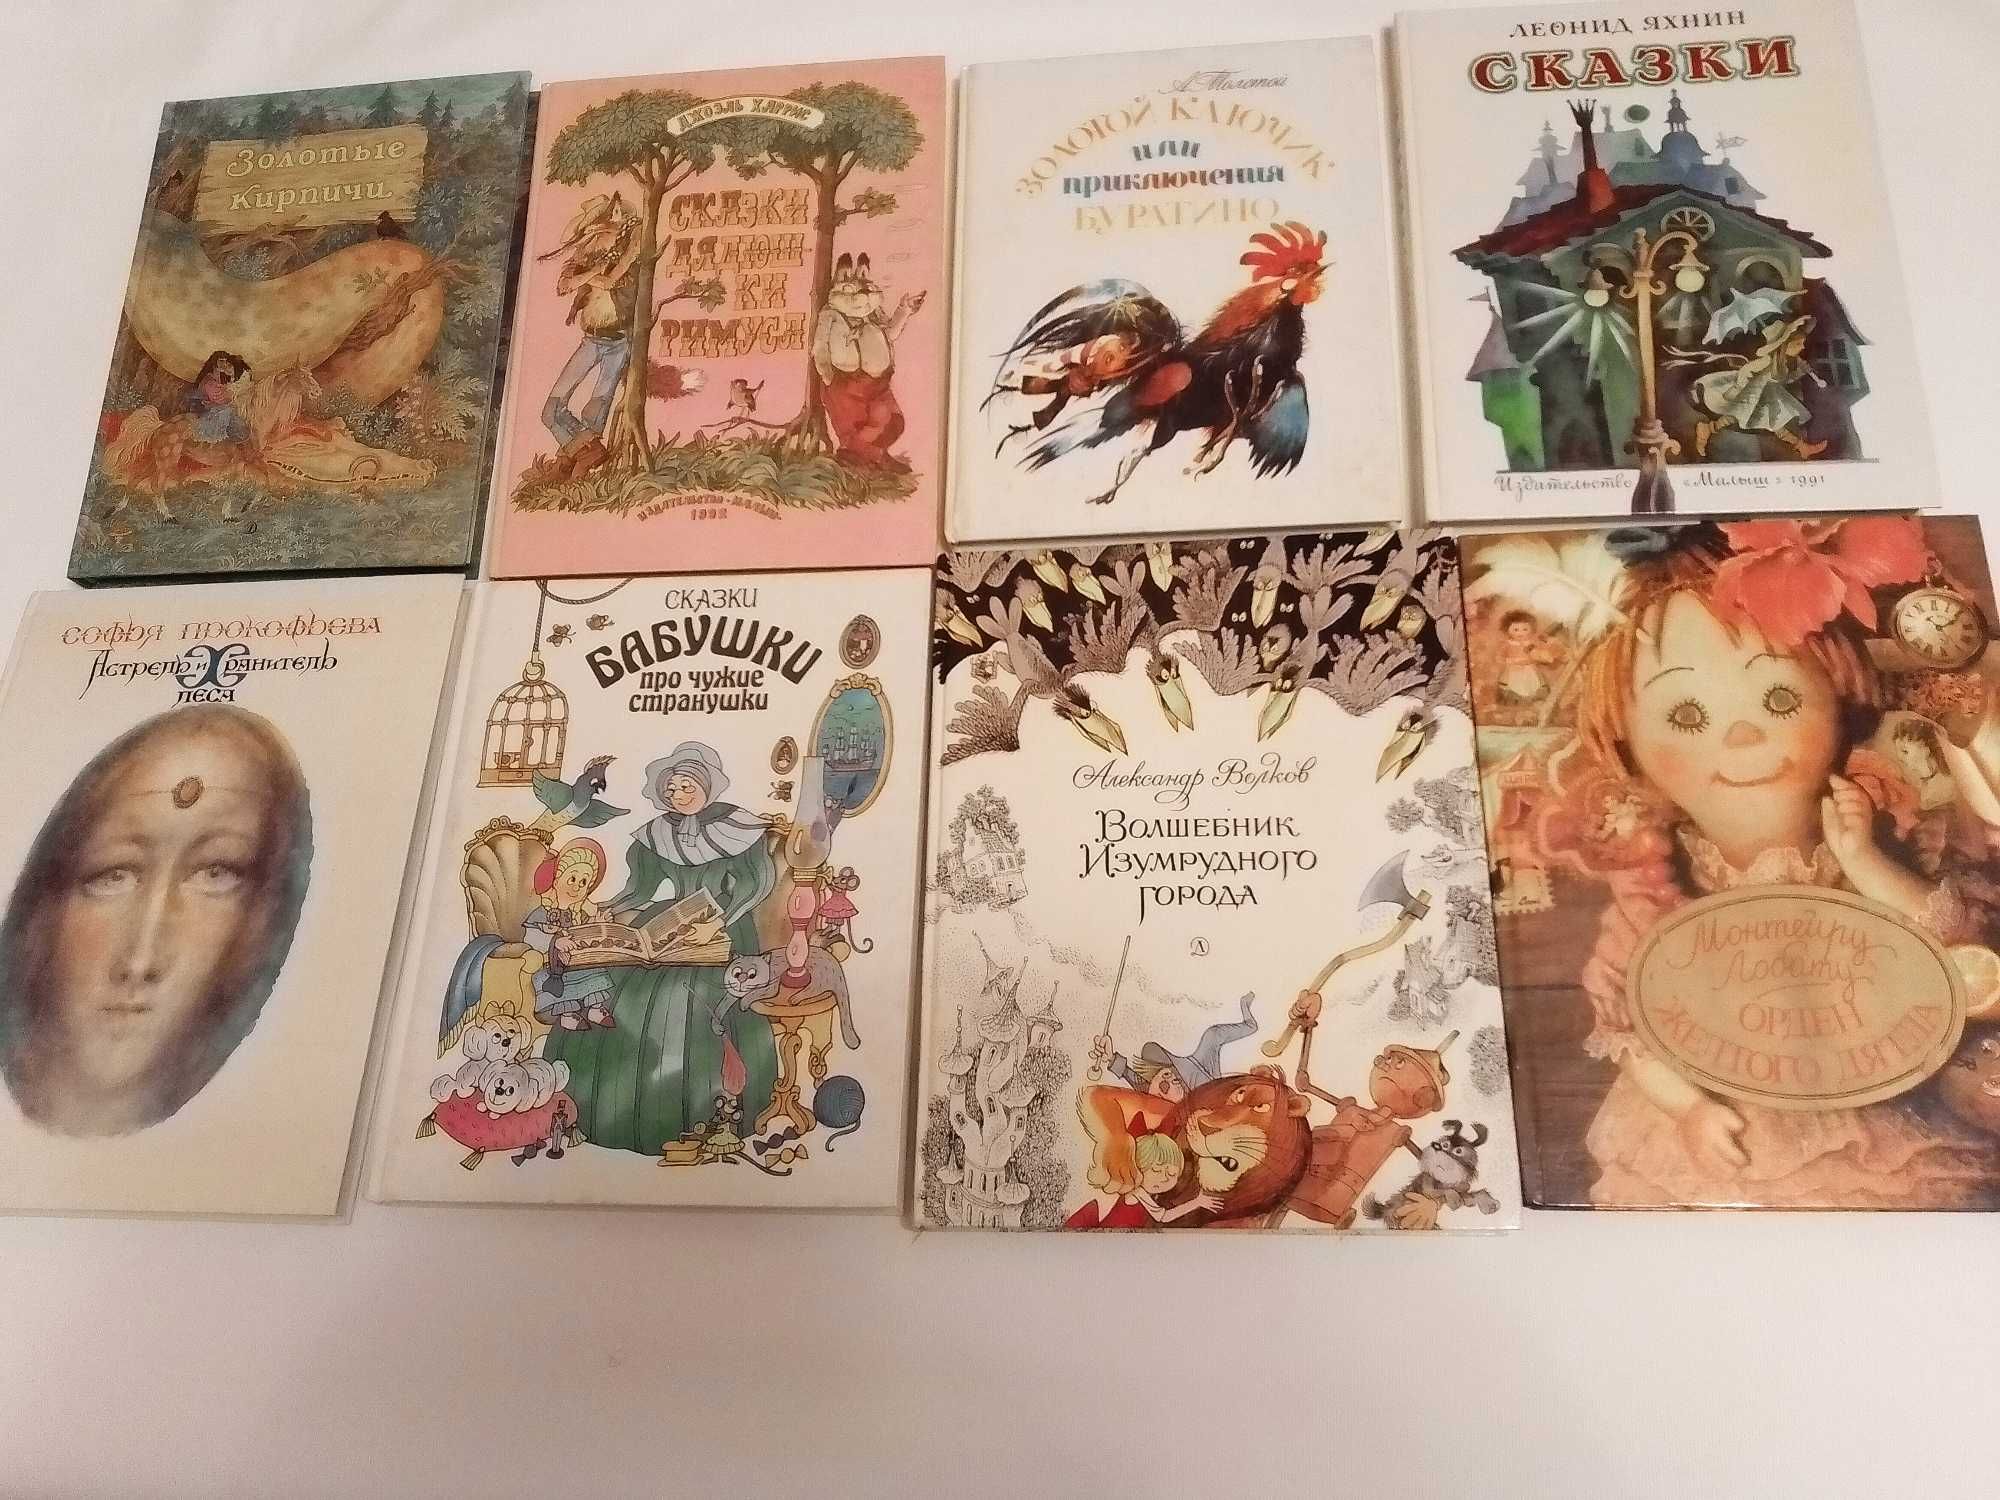 Коллекция детских книг в твёрдой обложке.